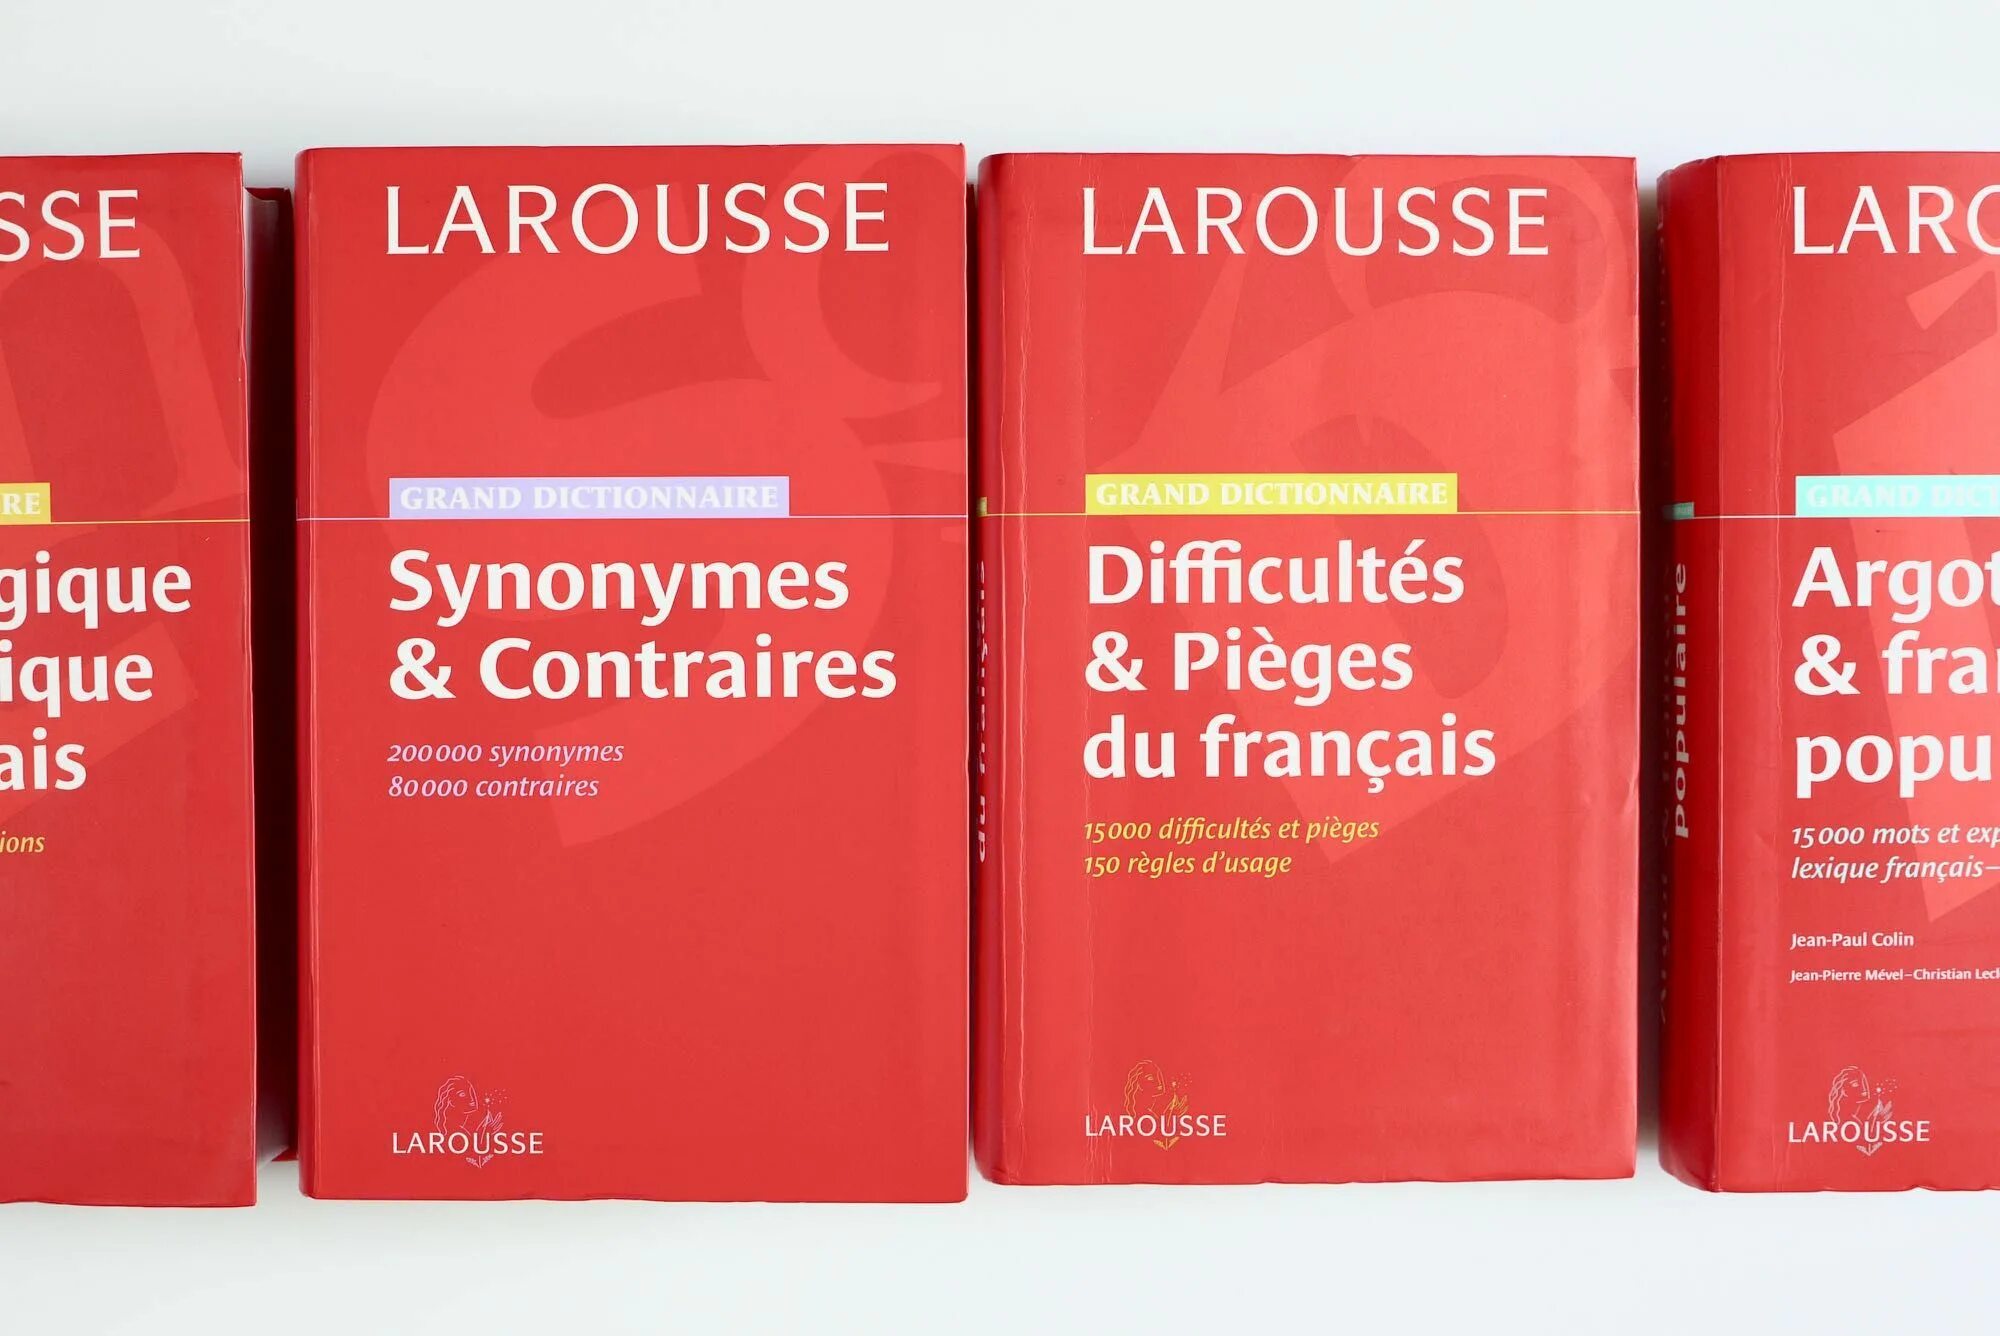 Larousse словарь. Французский словарь Ларусса. Petit Larousse словарь. Словарь Larousse логотип.